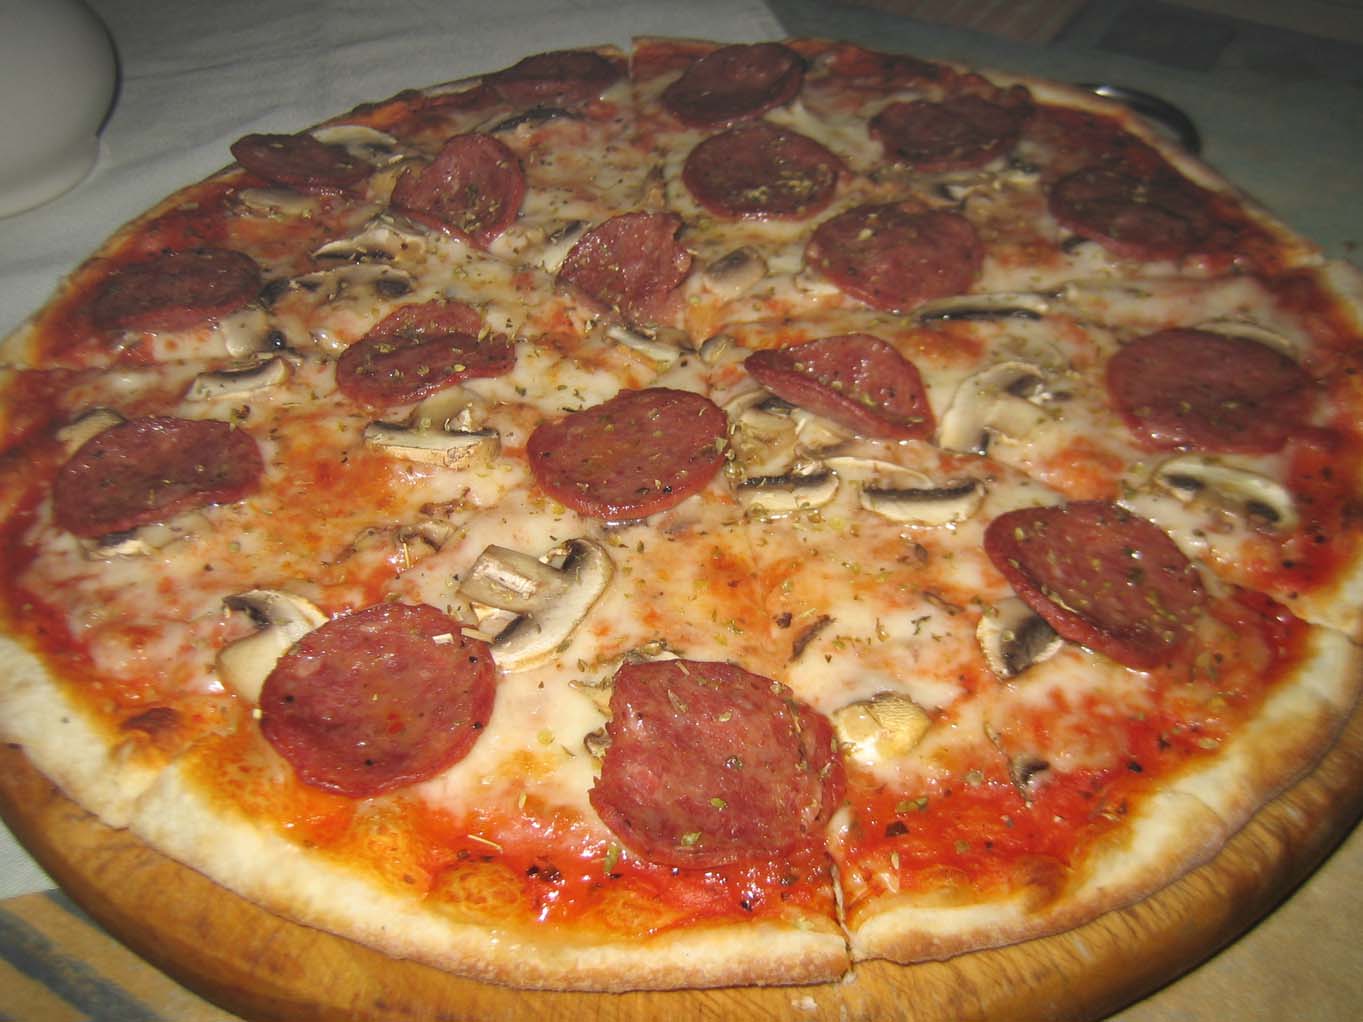 Pepperoni & mushroom pizza